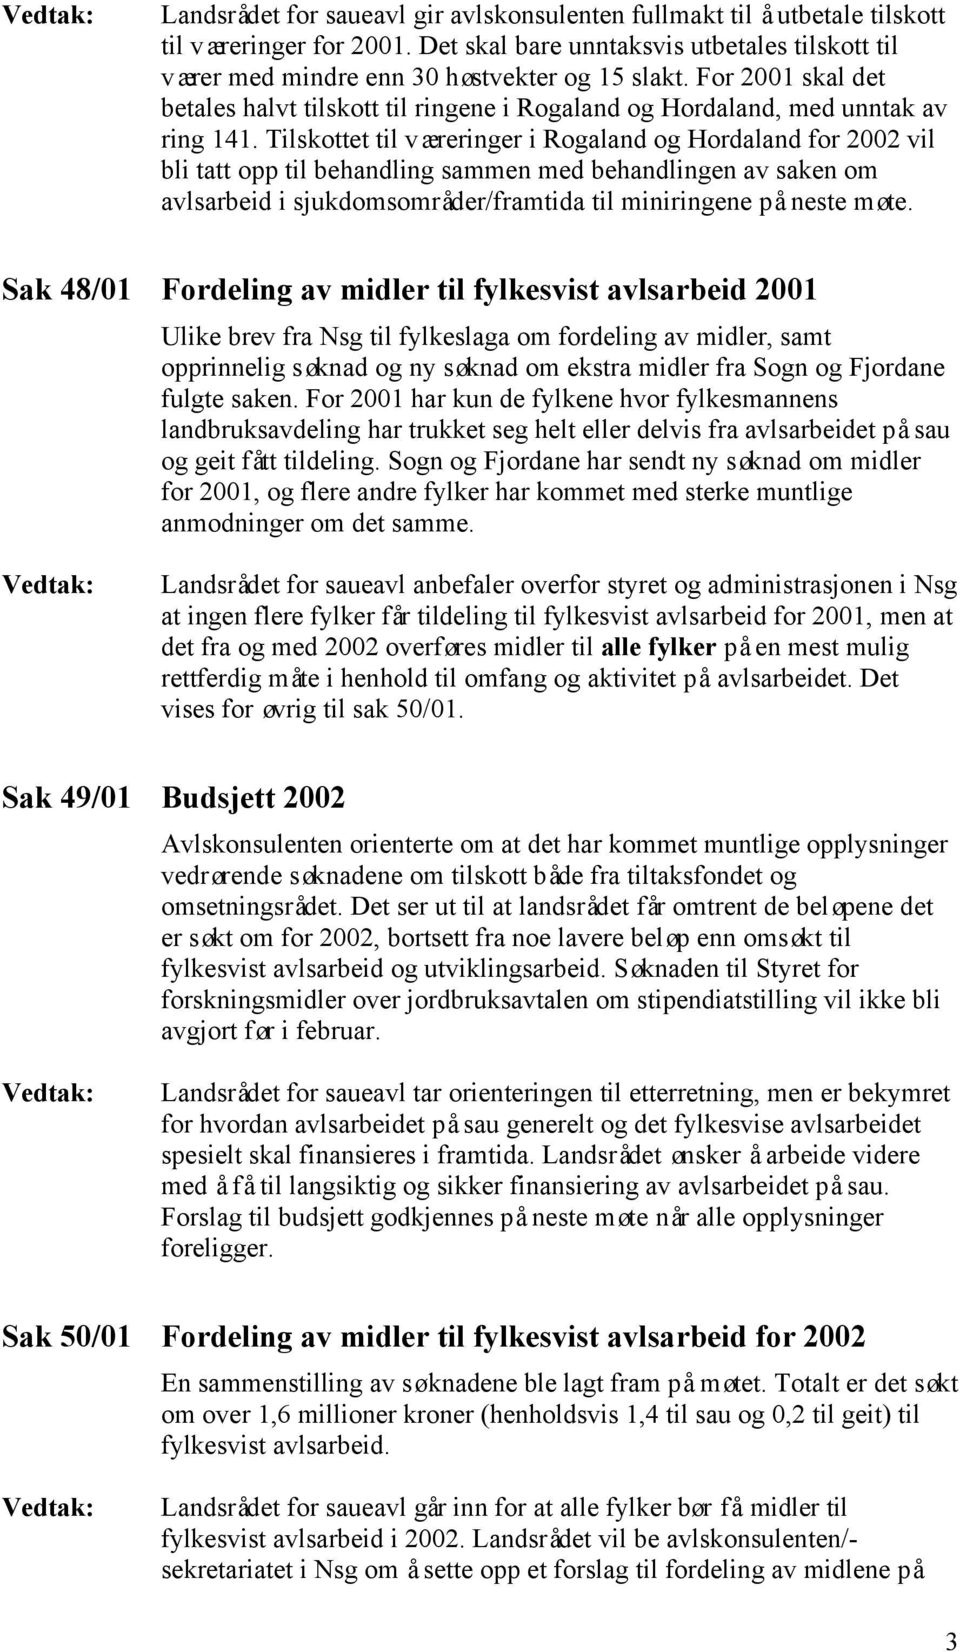 Tilskottet til væreringer i Rogaland og Hordaland for 2002 vil bli tatt opp til behandling sammen med behandlingen av saken om avlsarbeid i sjukdomsområder/framtida til miniringene på neste møte.